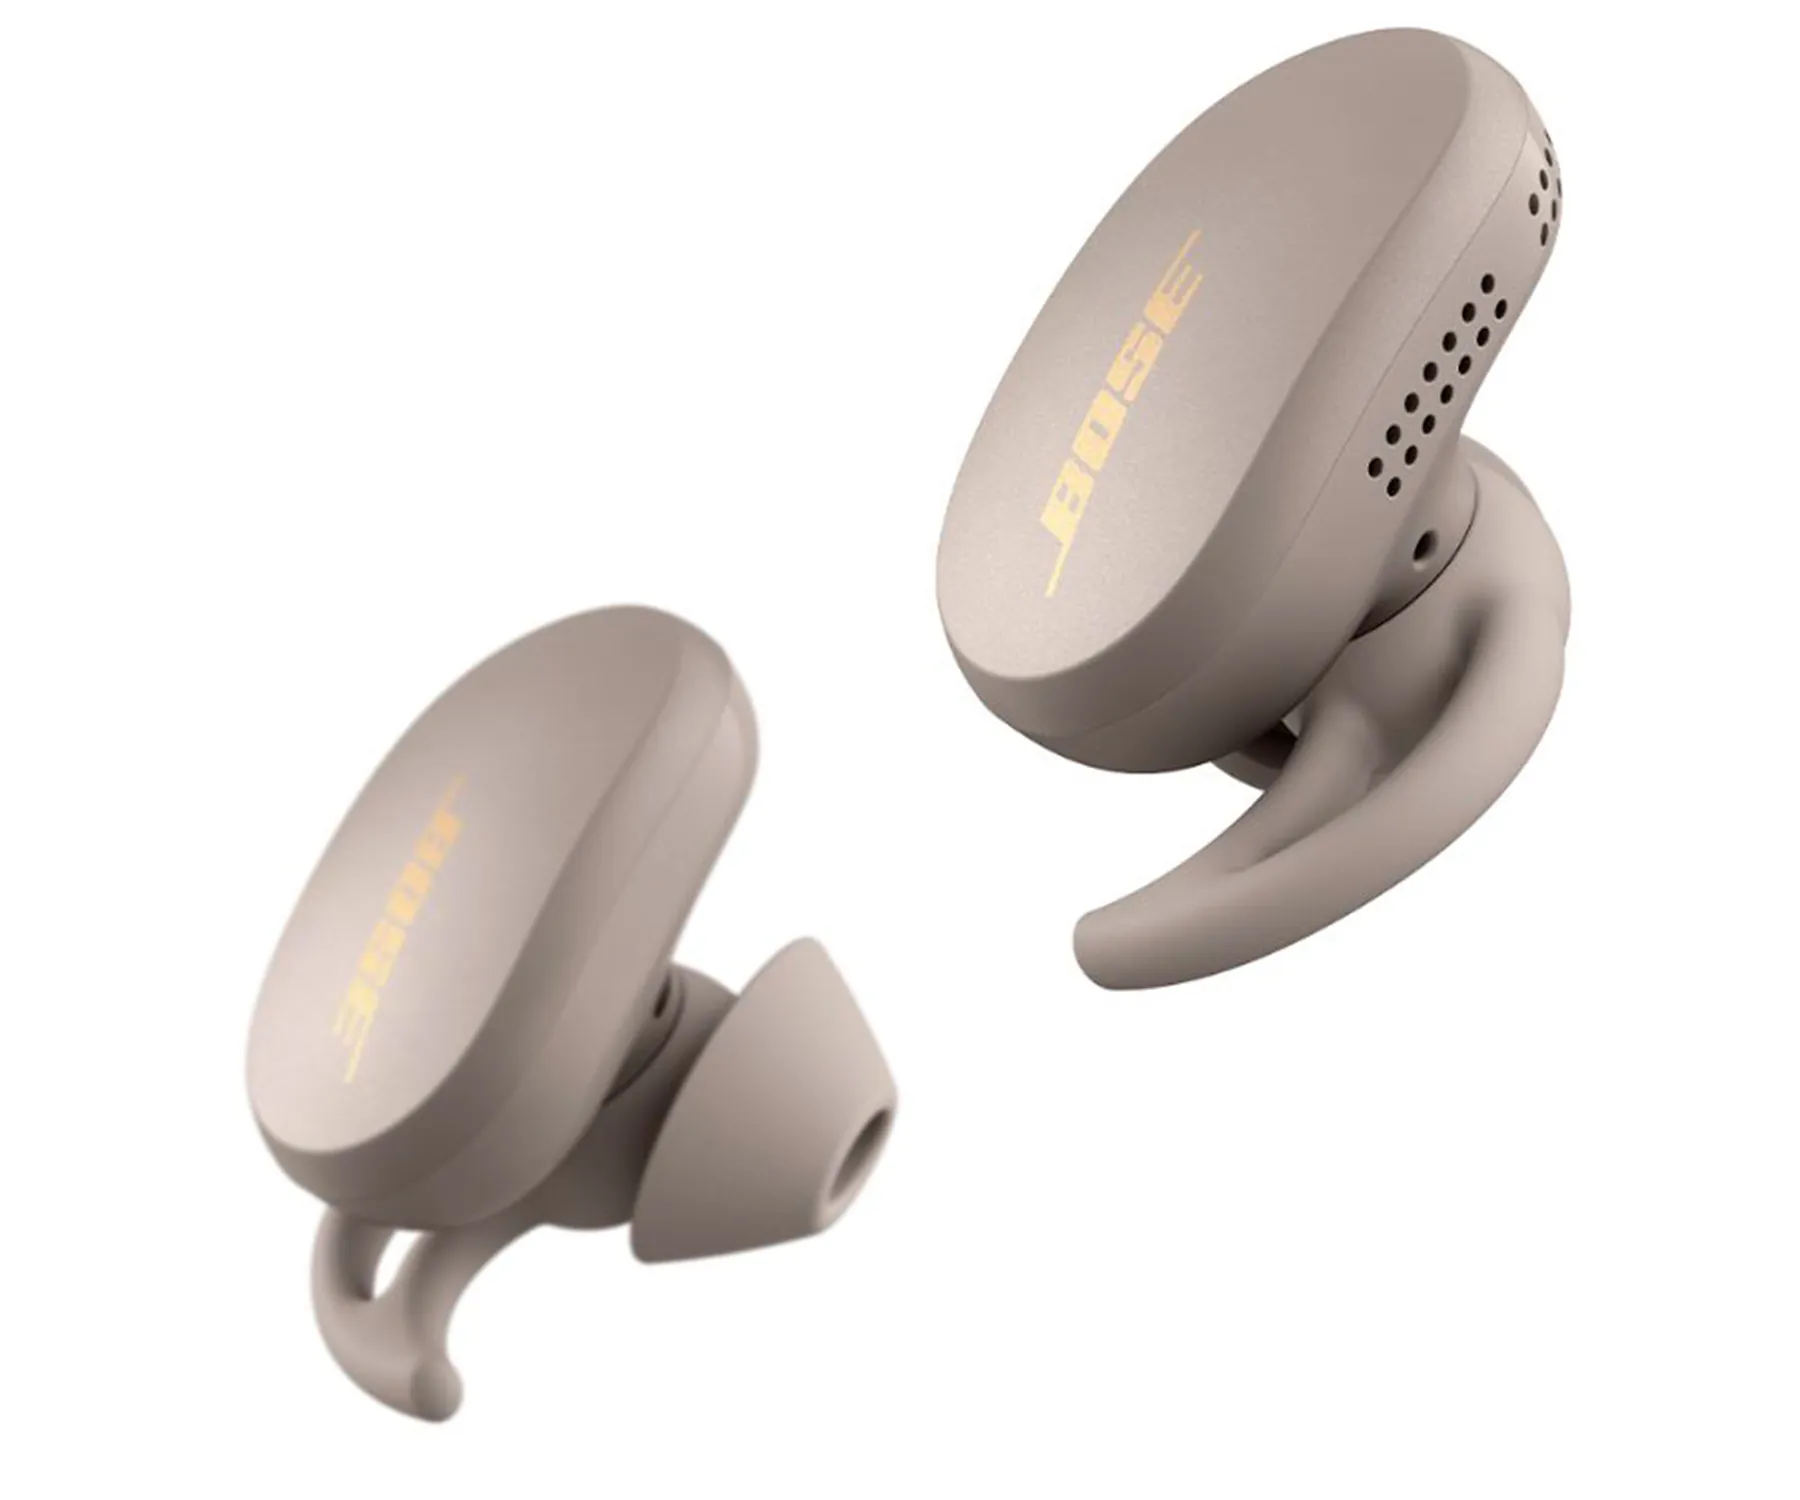 Uso del control táctil - Bose QuietComfort® Earbuds